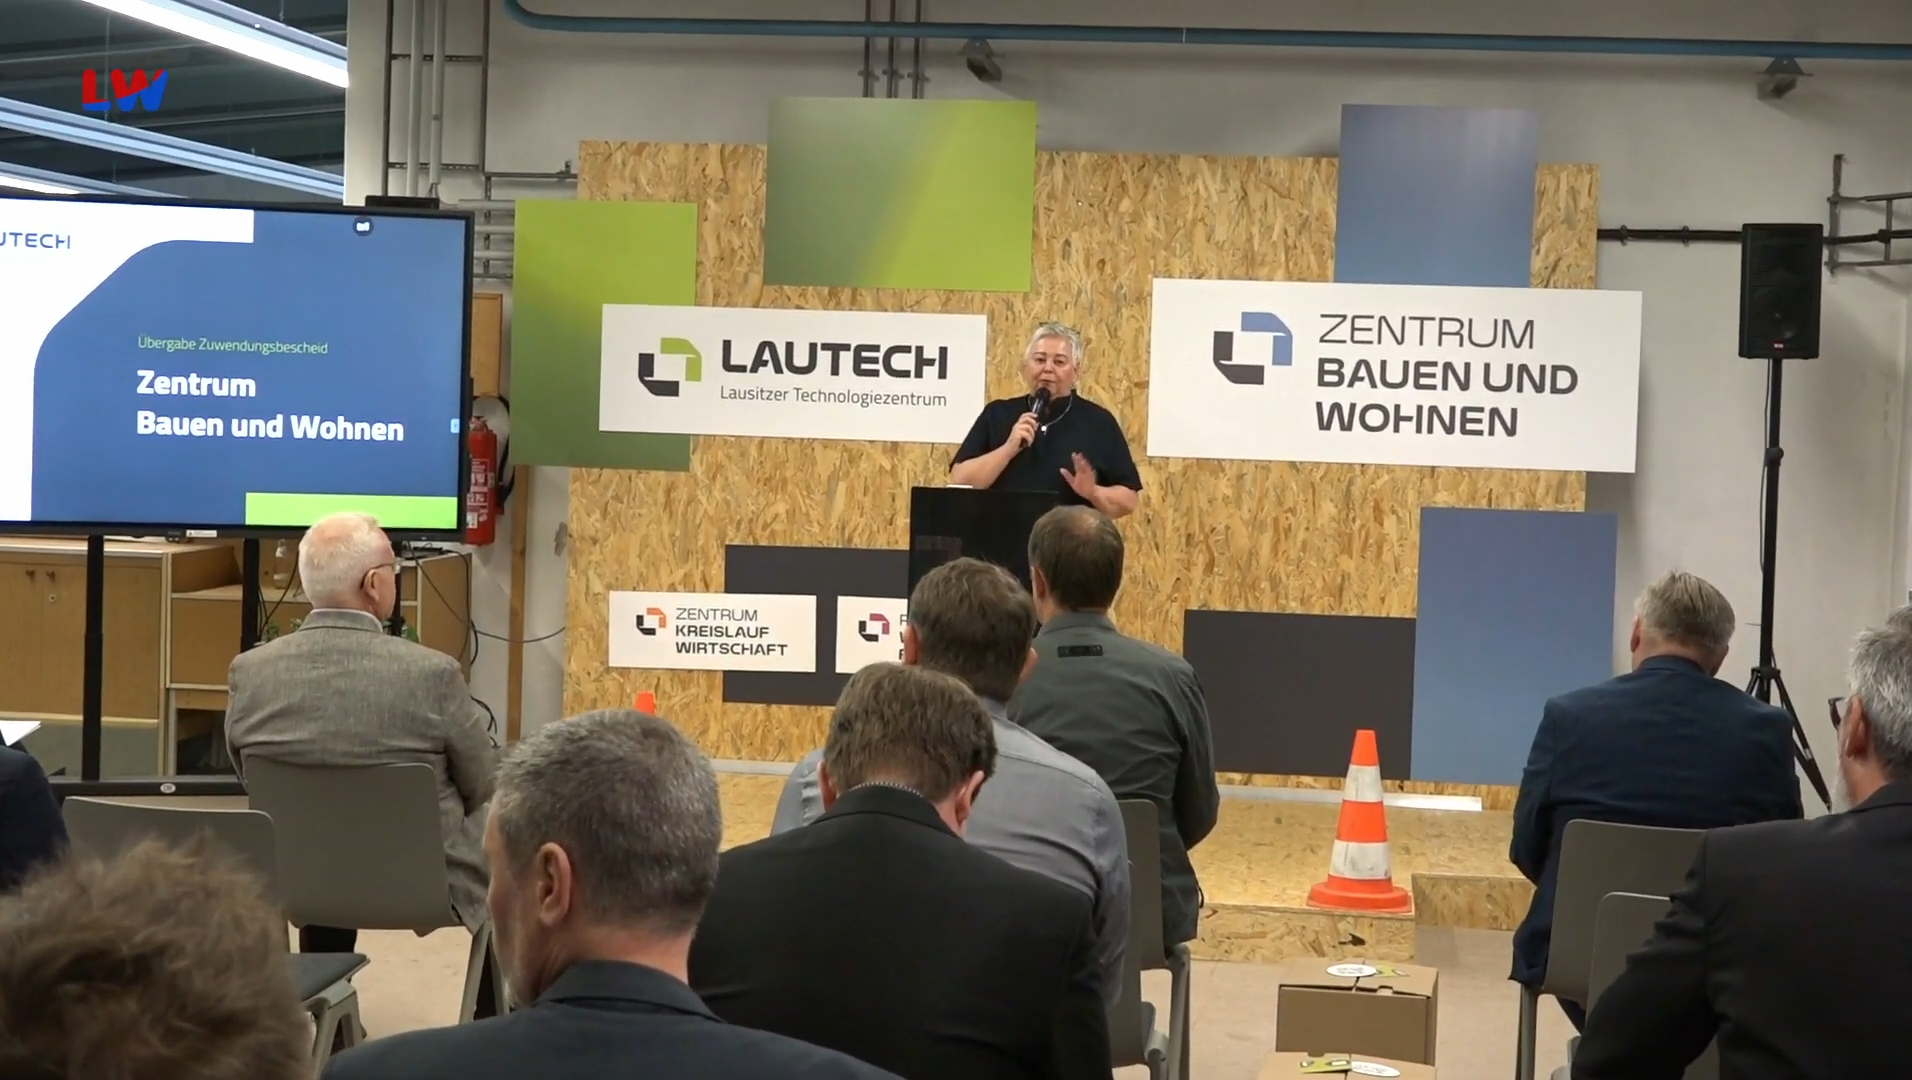 Die Geschäftsführerin der Lausitzer Technologiezentrum GmbH Kathrin Schlesinger steht auf einer Holzbühne und spricht in ein Mikrophon. Links neben ihr steht ein großer Monitor auf dem Zentrum Bauen und Wohnen steht.